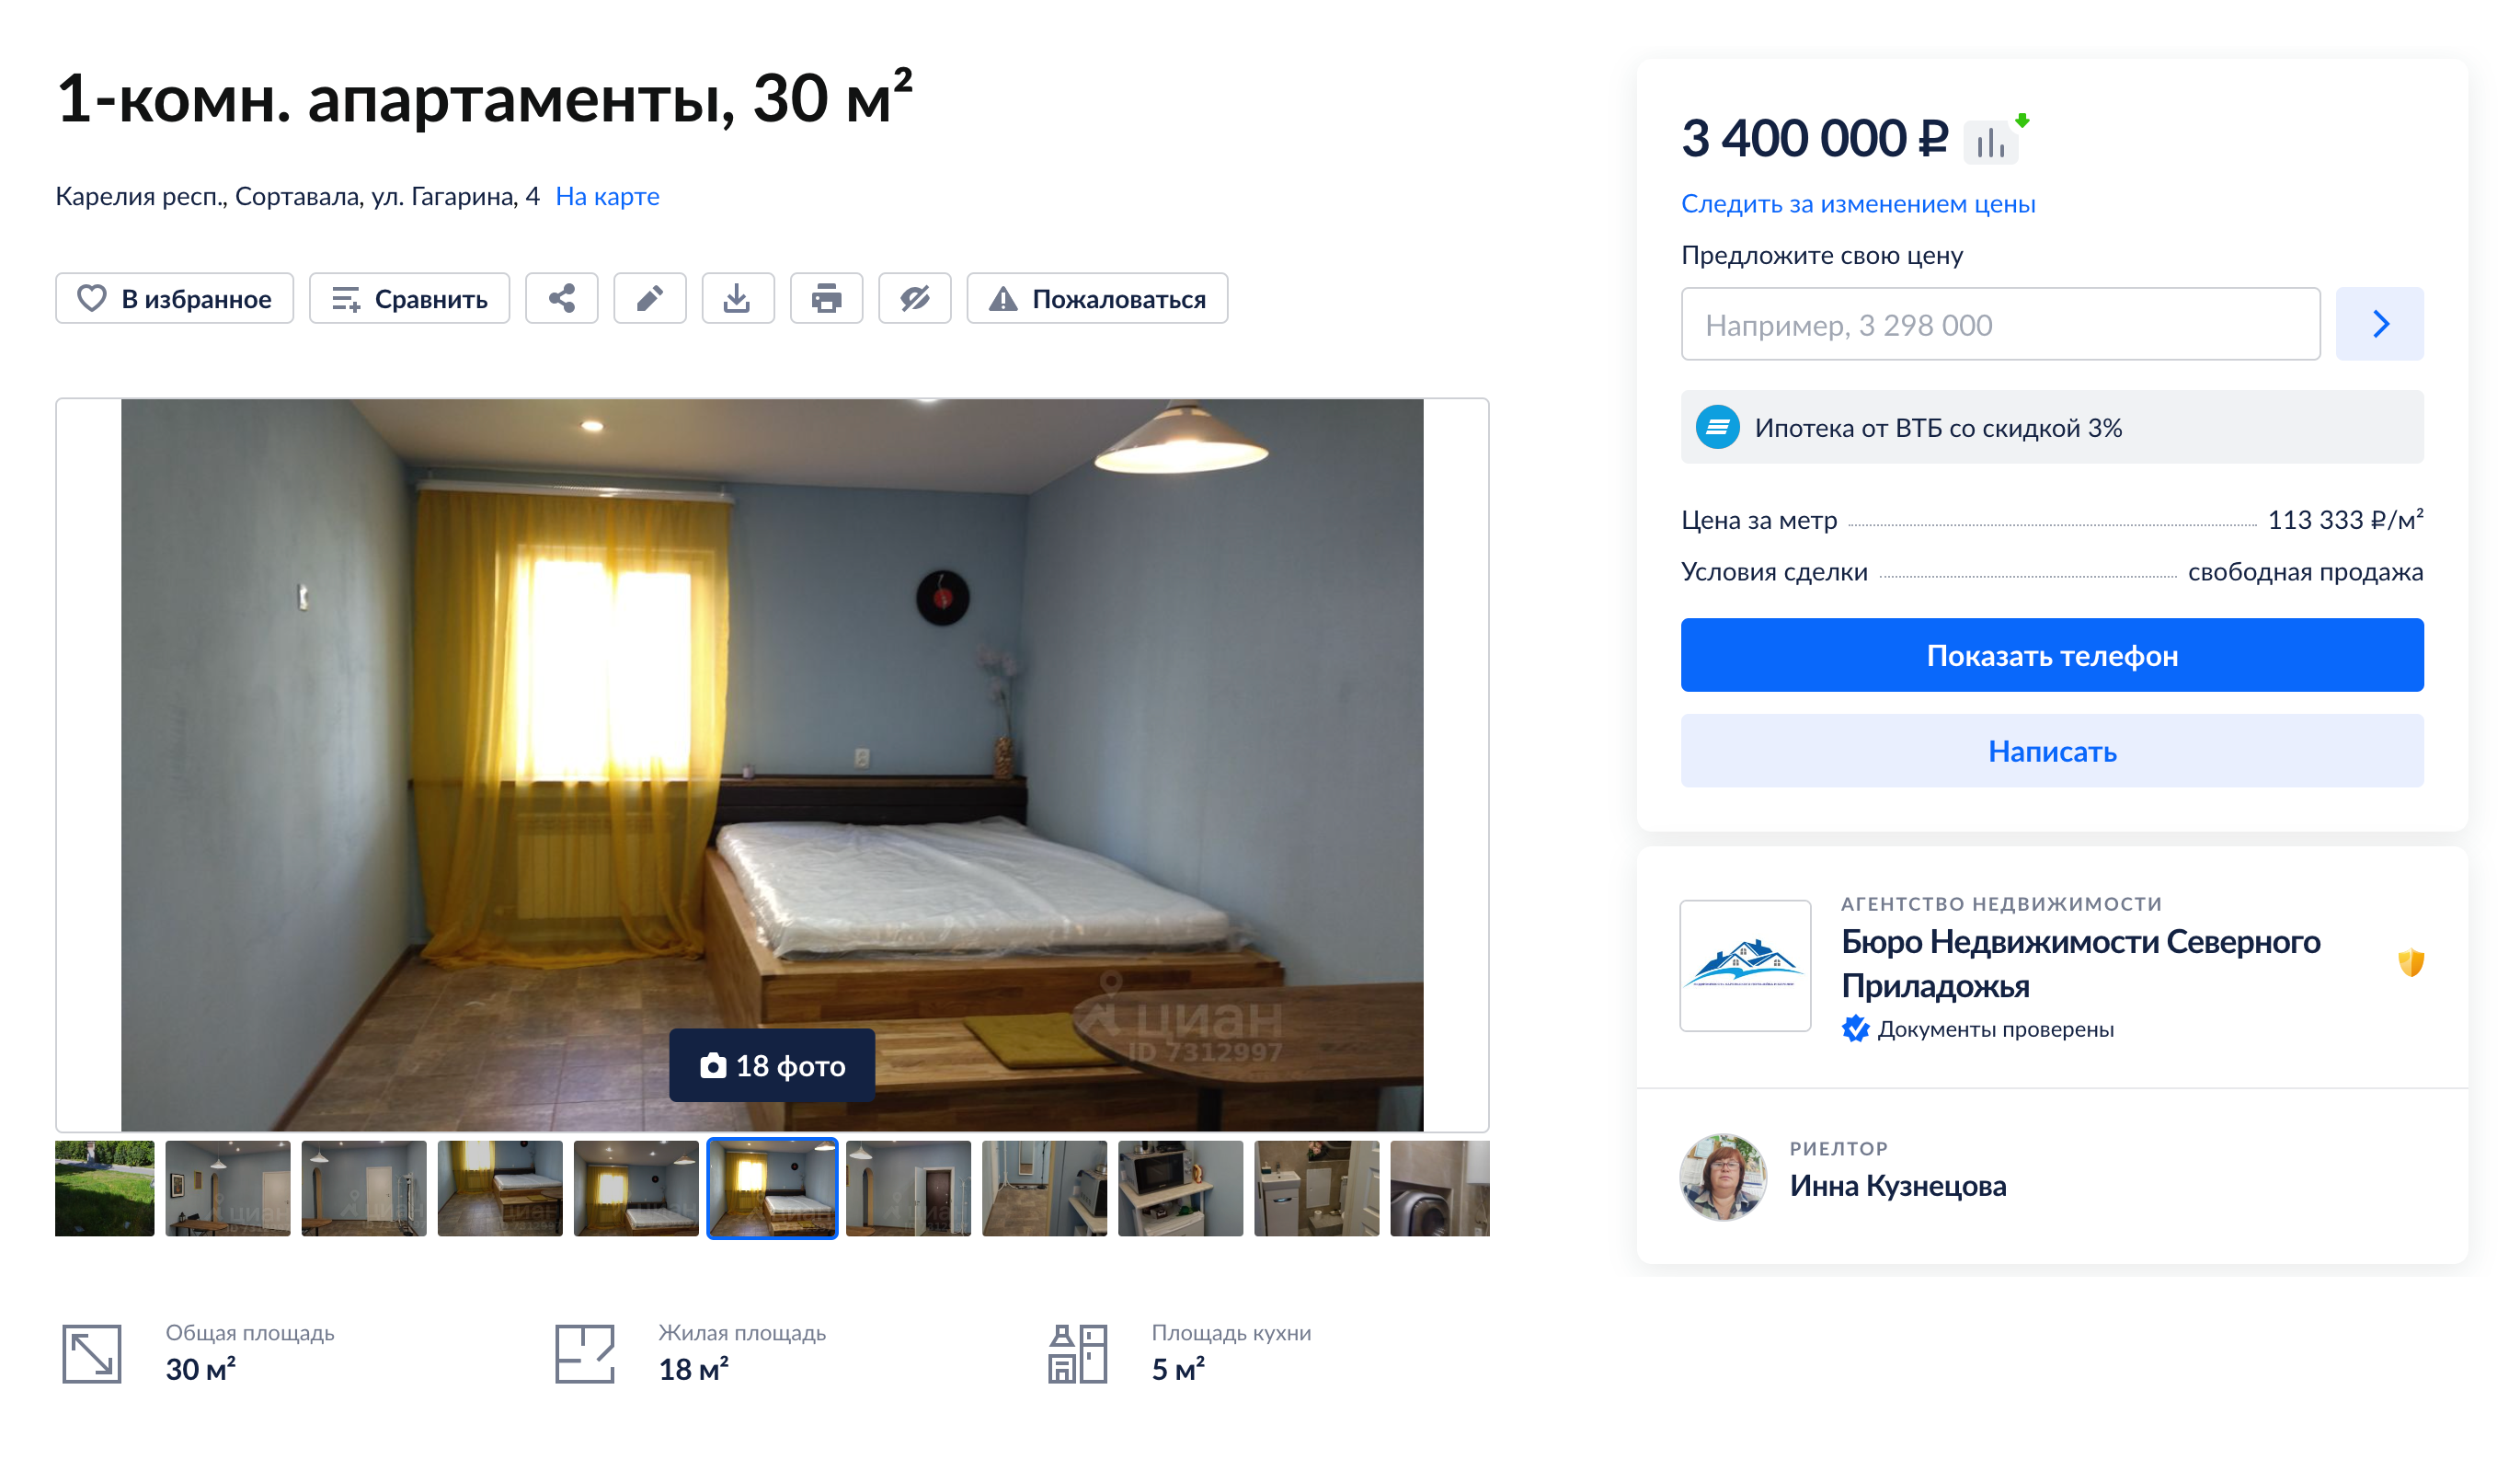 Еще апартаменты по схожей цене. Ремонт уже сделан, так что можно сэкономить. Источник: cian.ru